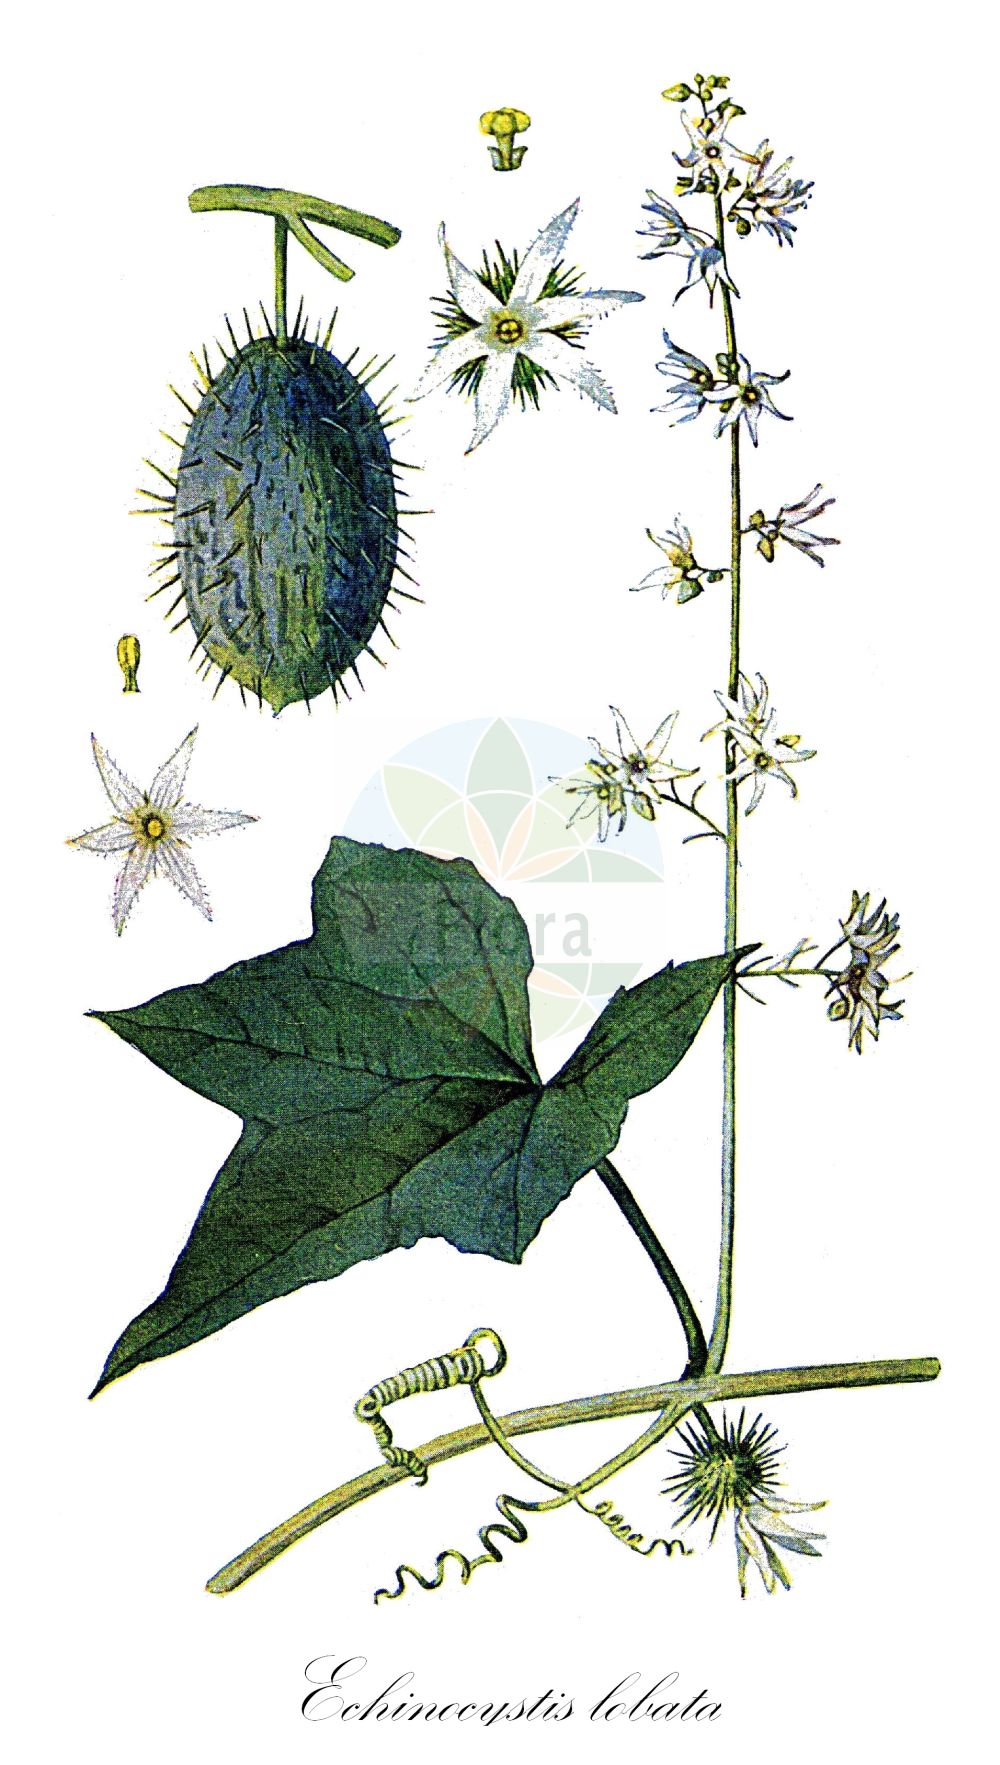 Historische Abbildung von Echinocystis lobata (Stachelgurke - Wild Cucumber). Das Bild zeigt Blatt, Bluete, Frucht und Same. ---- Historical Drawing of Echinocystis lobata (Stachelgurke - Wild Cucumber). The image is showing leaf, flower, fruit and seed.(Echinocystis lobata,Stachelgurke,Wild Cucumber,Echinocystis echinata,Echinocystis lobata,Sicyos lobatus,Stachelgurke,Gelappte Stachelgurke,Igelgurke,Wild Cucumber,Wild Balsam Apple,Echinocystis,Stachelgurke,Wild Cucumber,Cucurbitaceae,Kürbisgewächse,Cucurbit family,Blatt,Bluete,Frucht,Same,leaf,flower,fruit,seed,Eaton (1916))